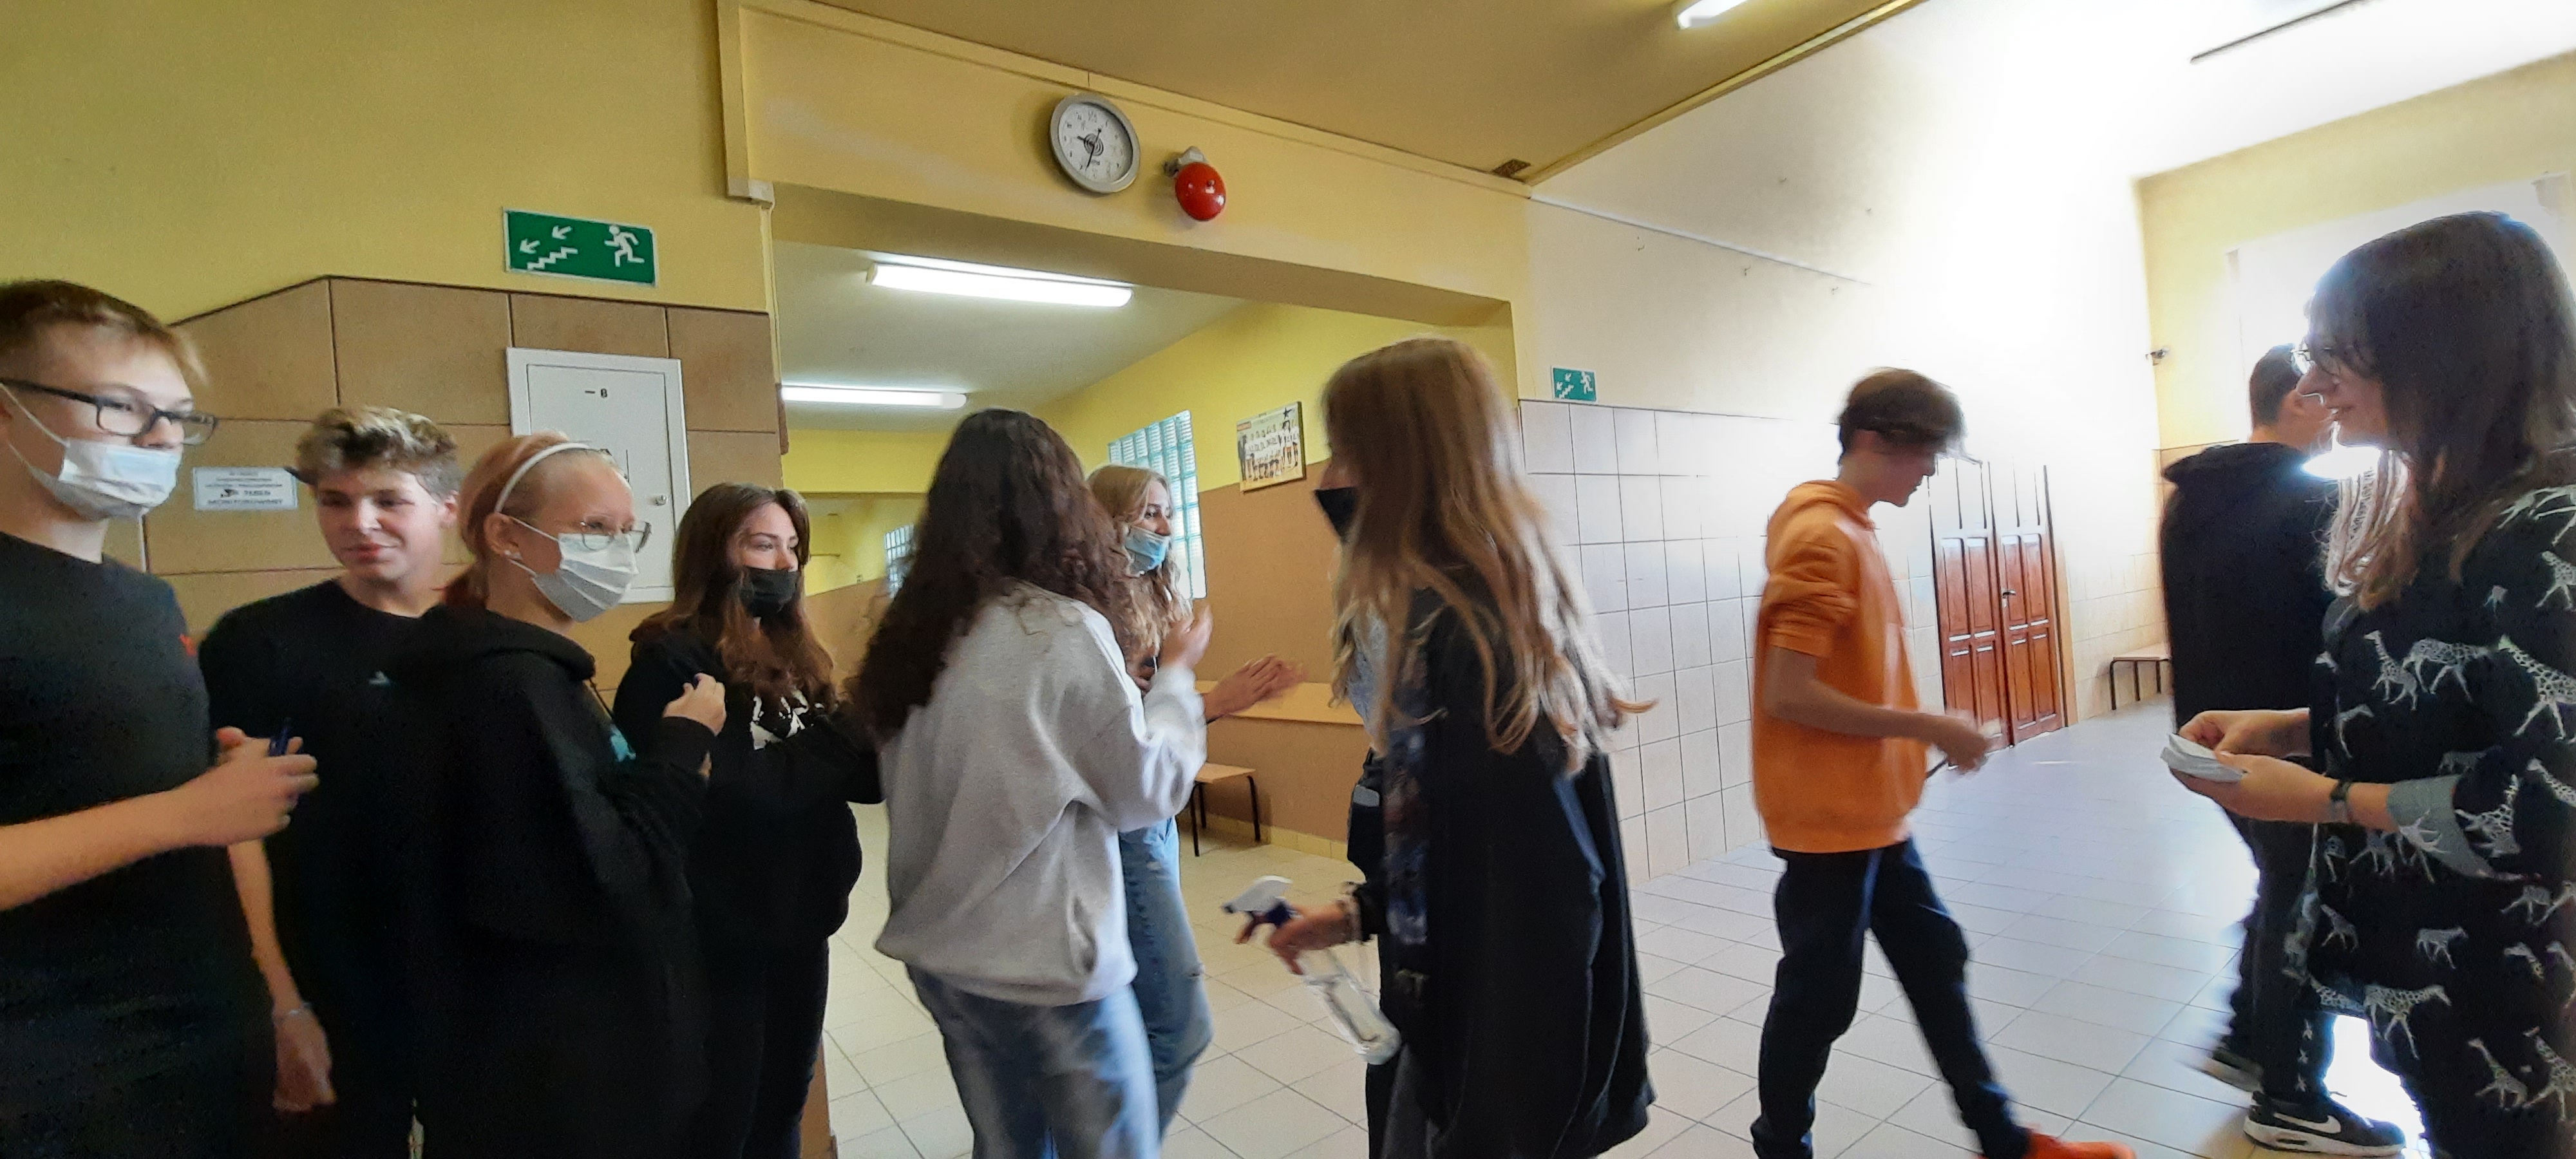 Nastolatki chodzące po korytarzu szkolnym